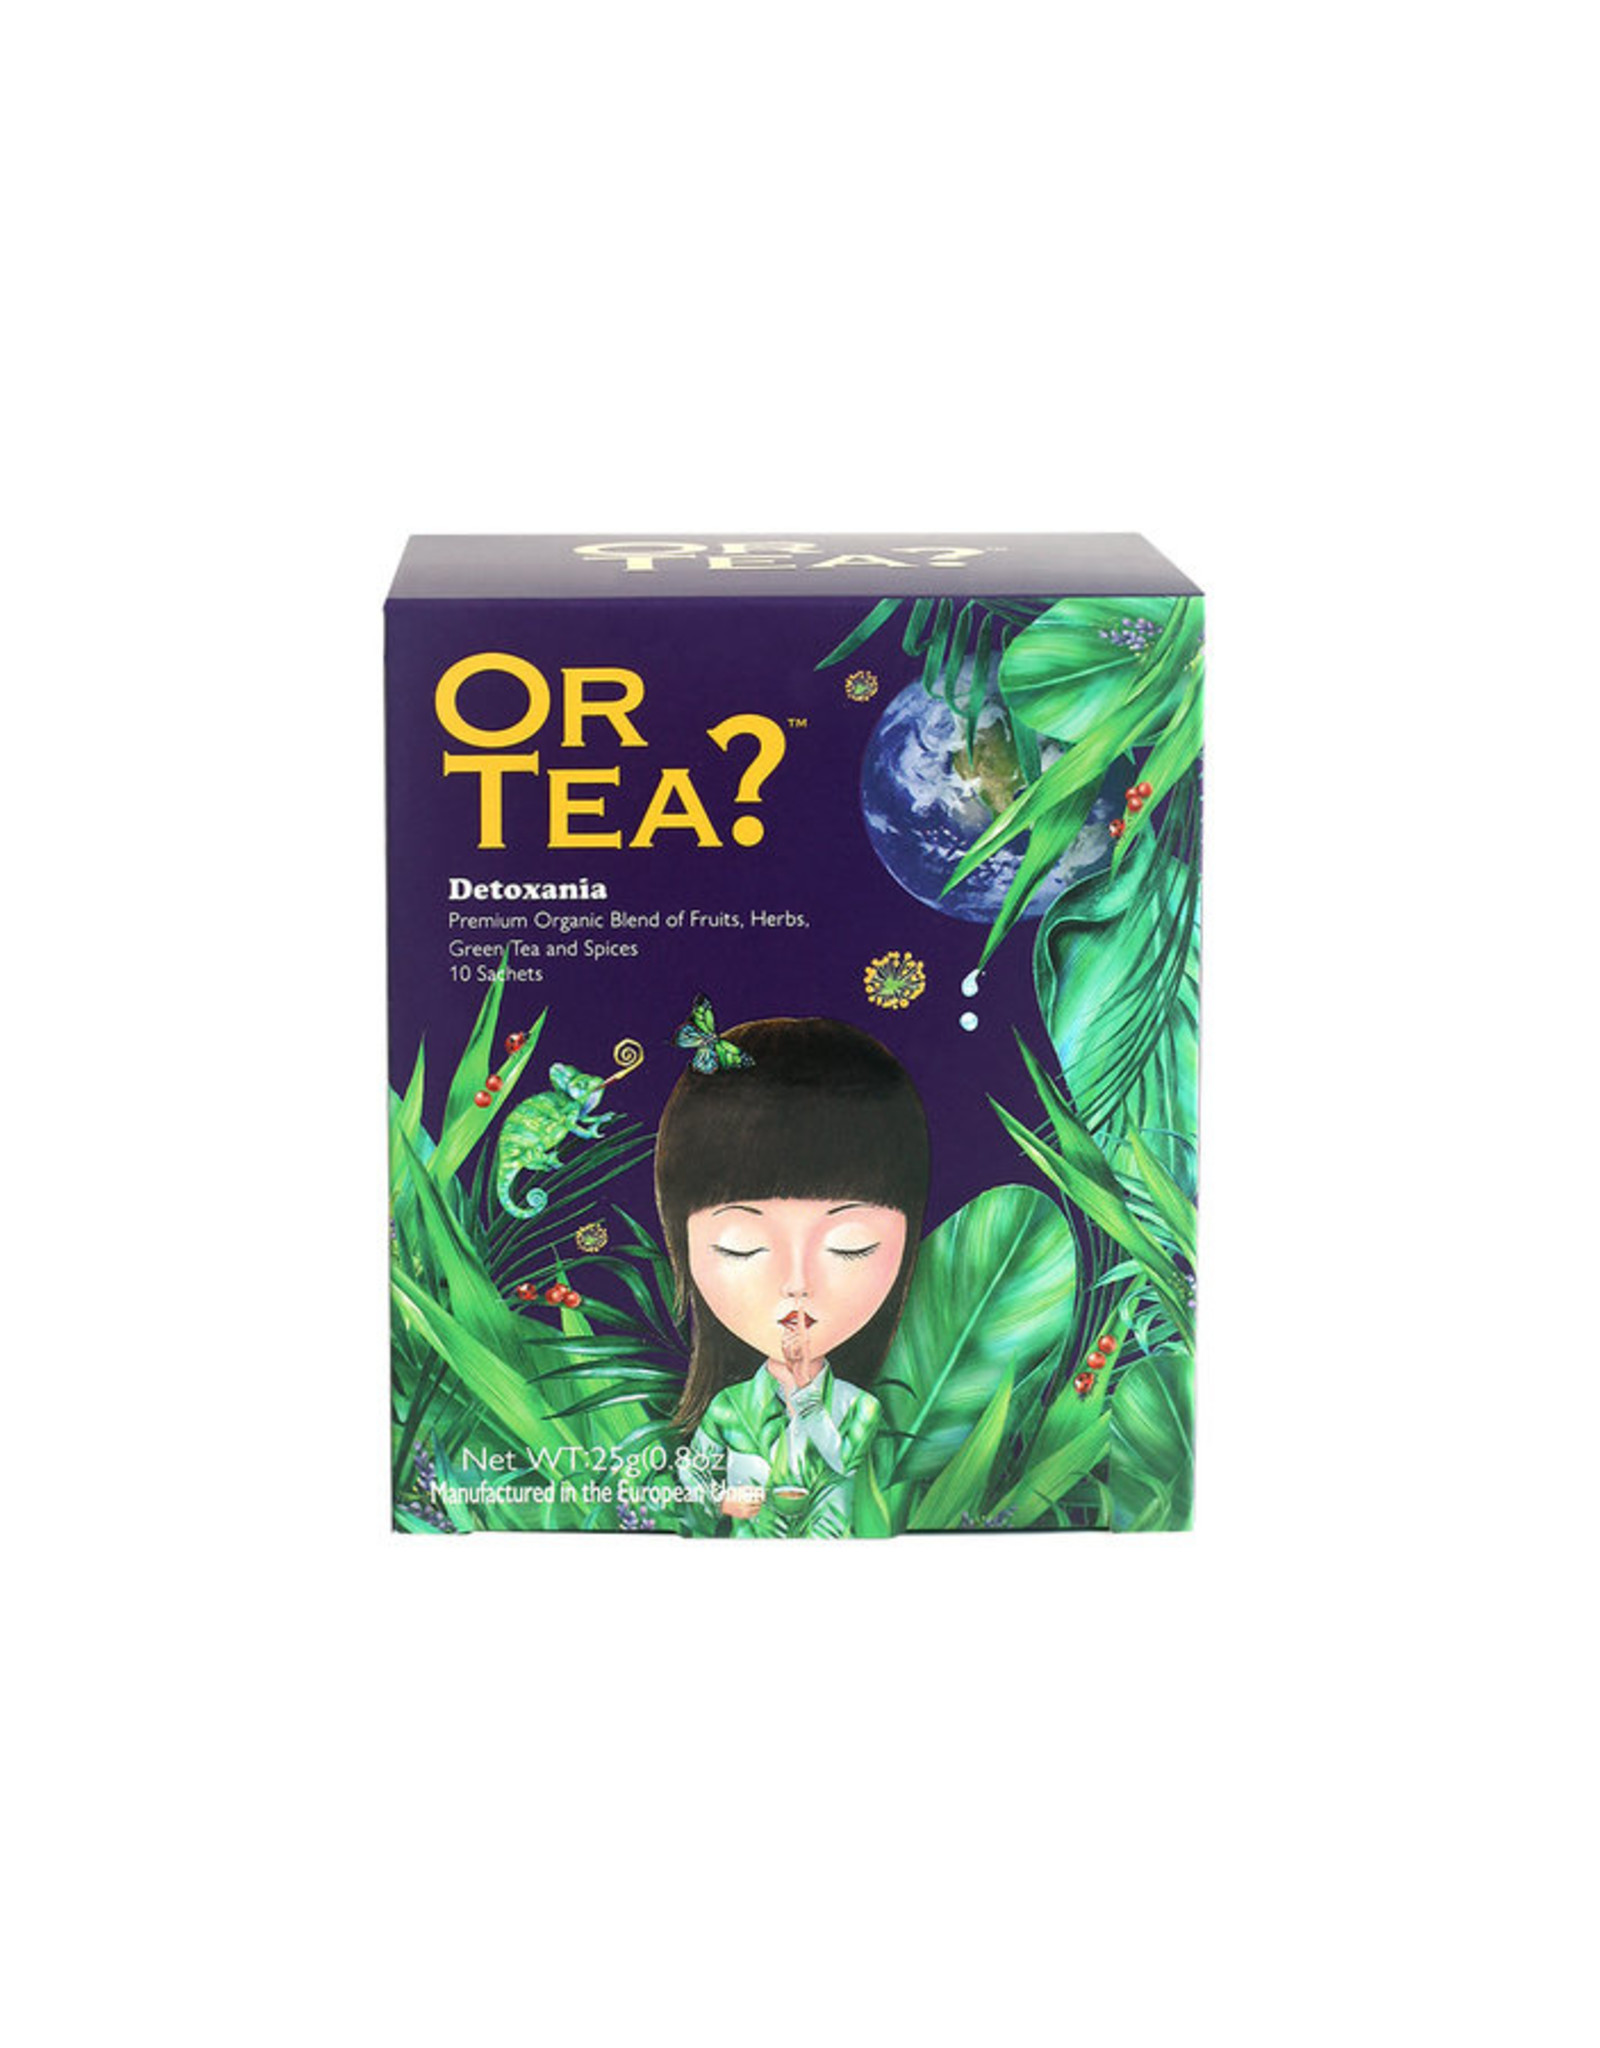 Or Tea? Organic Detoxania - 10-Sachet Box (Pillow)